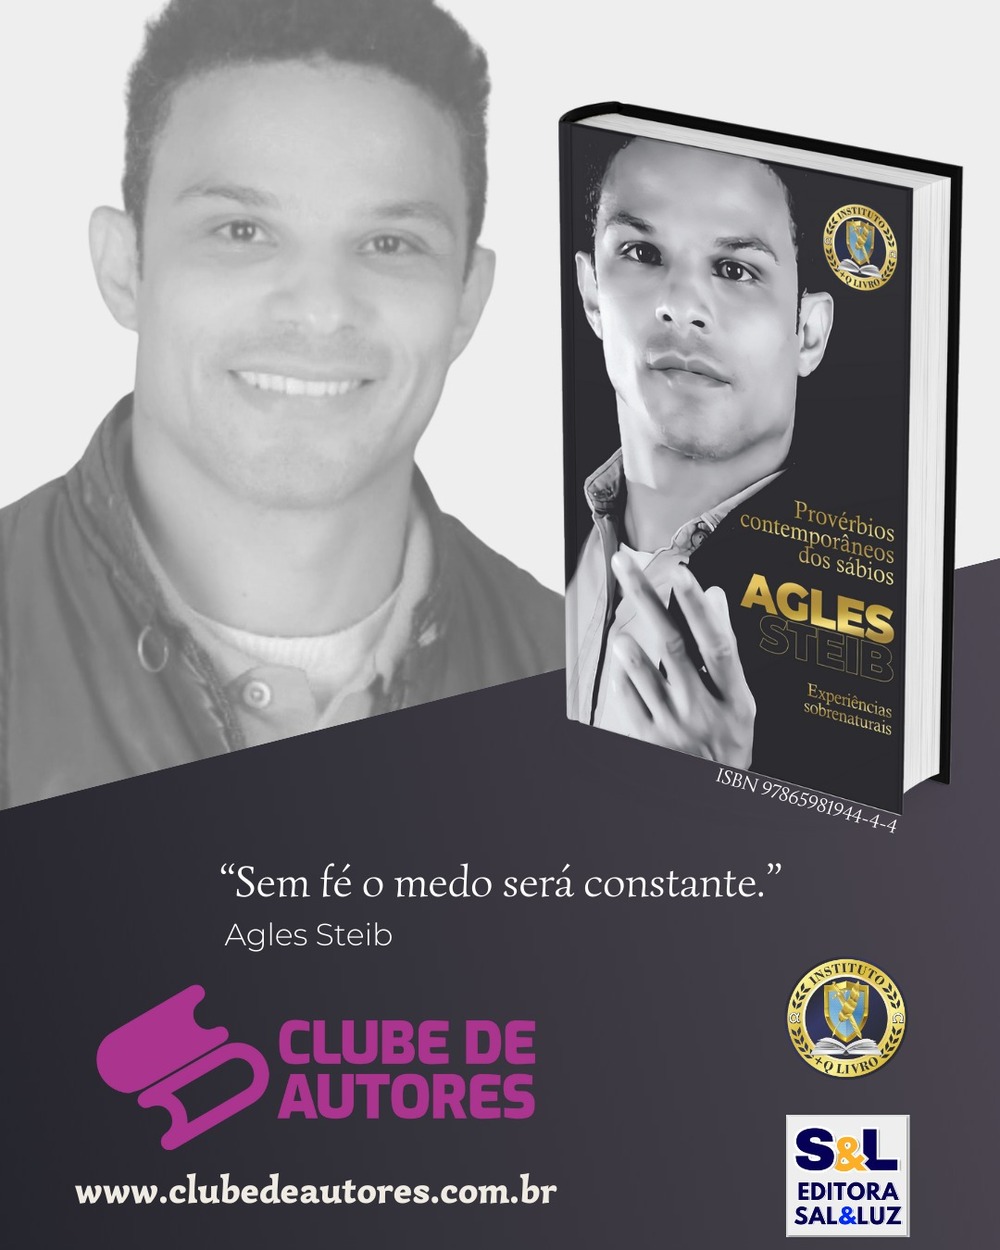 O ator Agles Steib, artista renomado no meio artístico lança livro, no Brasil